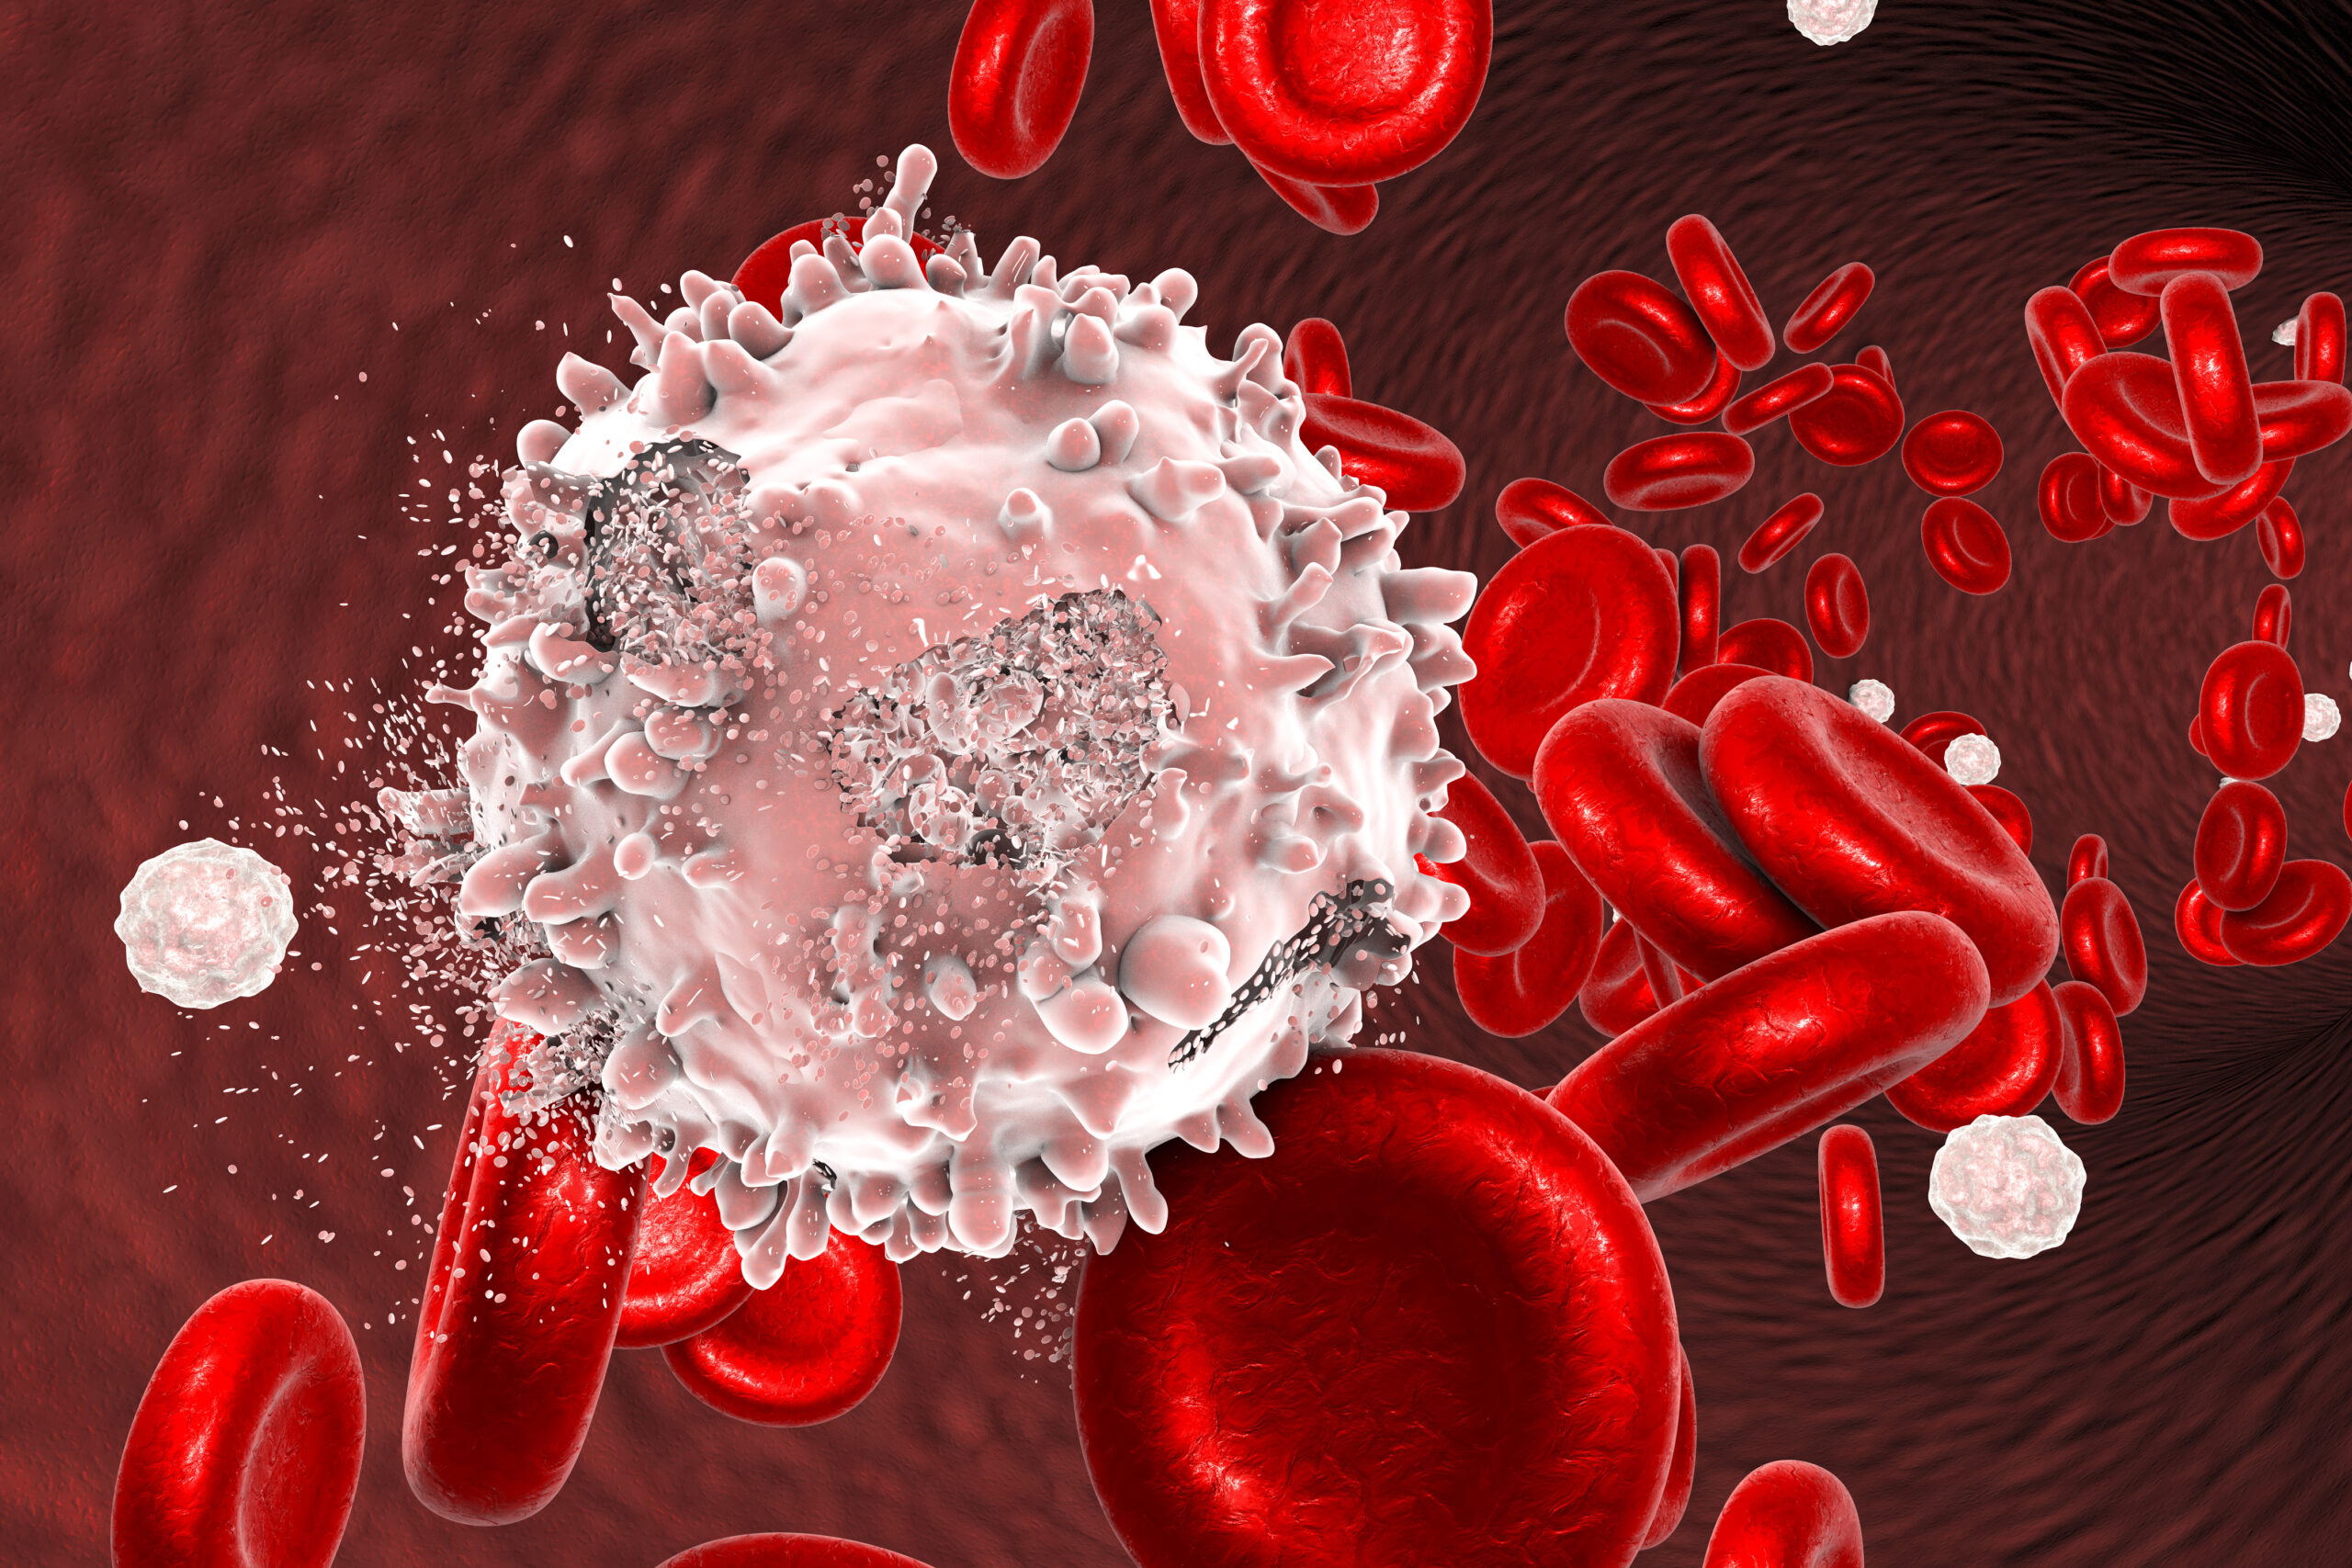 Destrucción de célula leucémica, imagen conceptual. Ilustración 3D que puede utilizarse para ilustrar el tratamiento del cáncer de sangre.